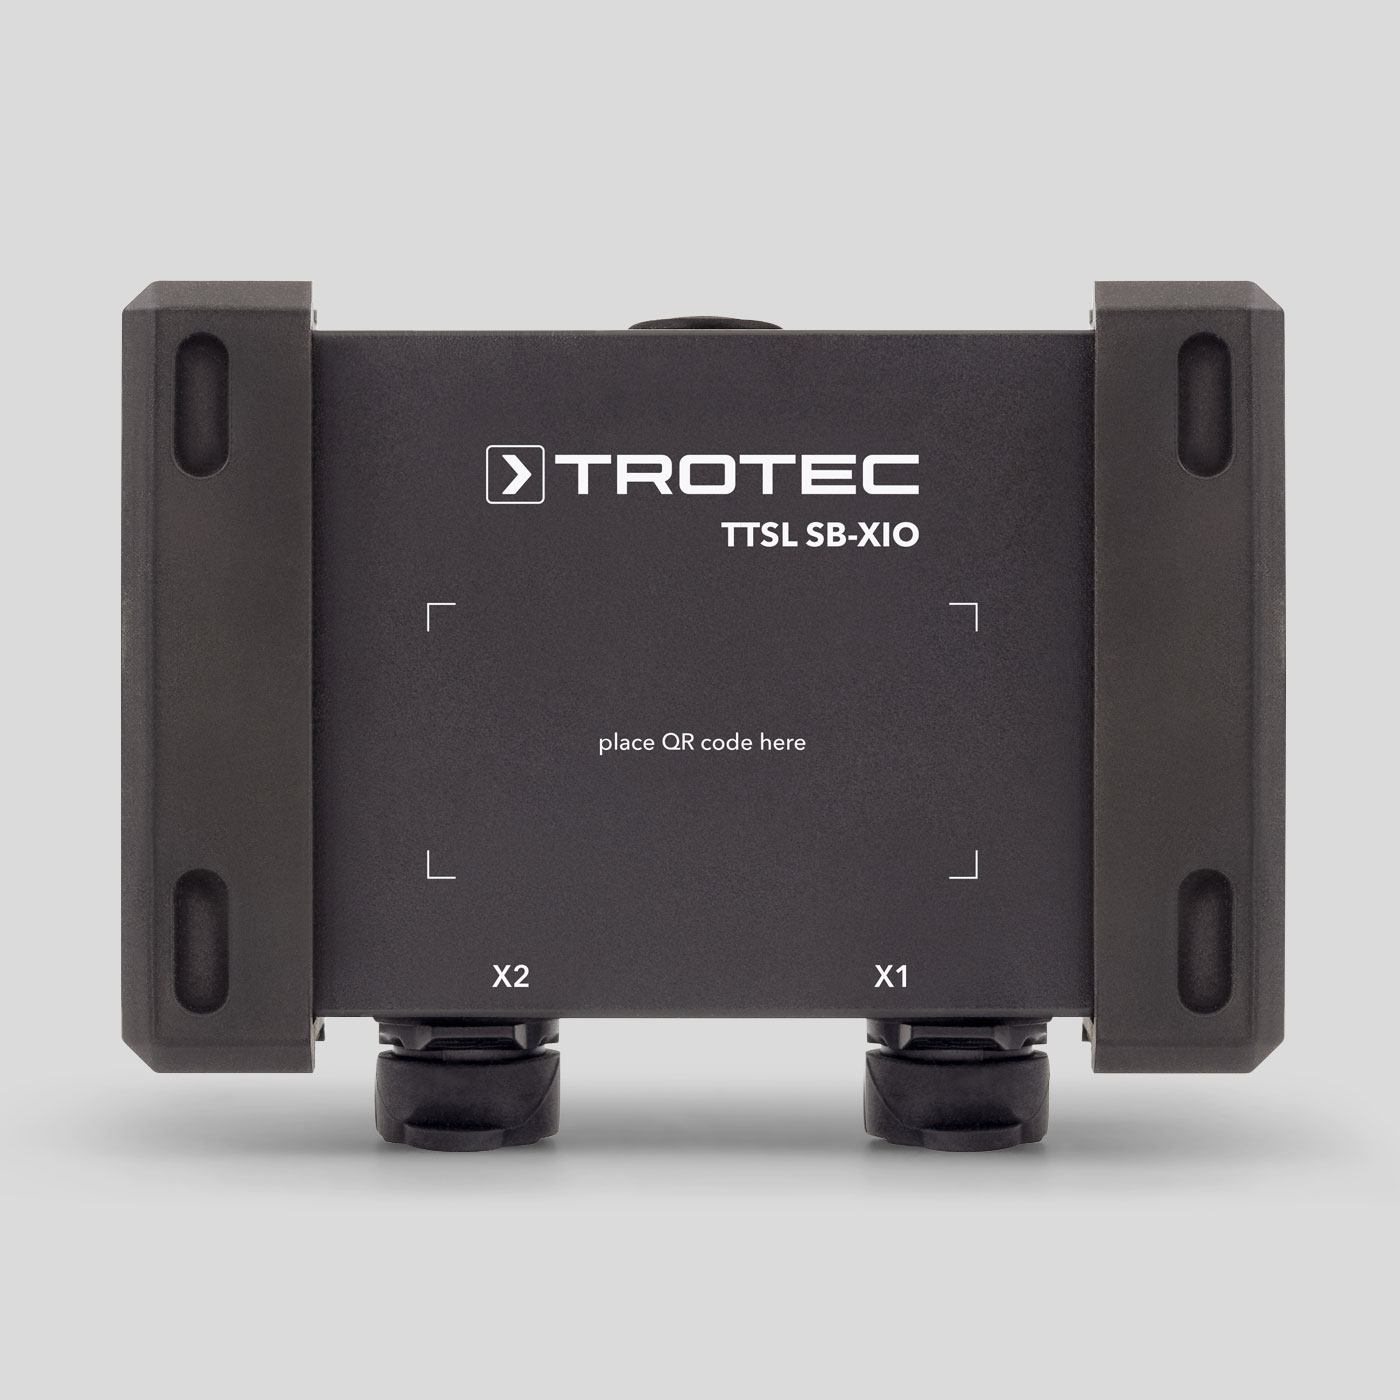 TTSL® SB-XIO bežična senzorska kutija za strojeve, sustave i senzore